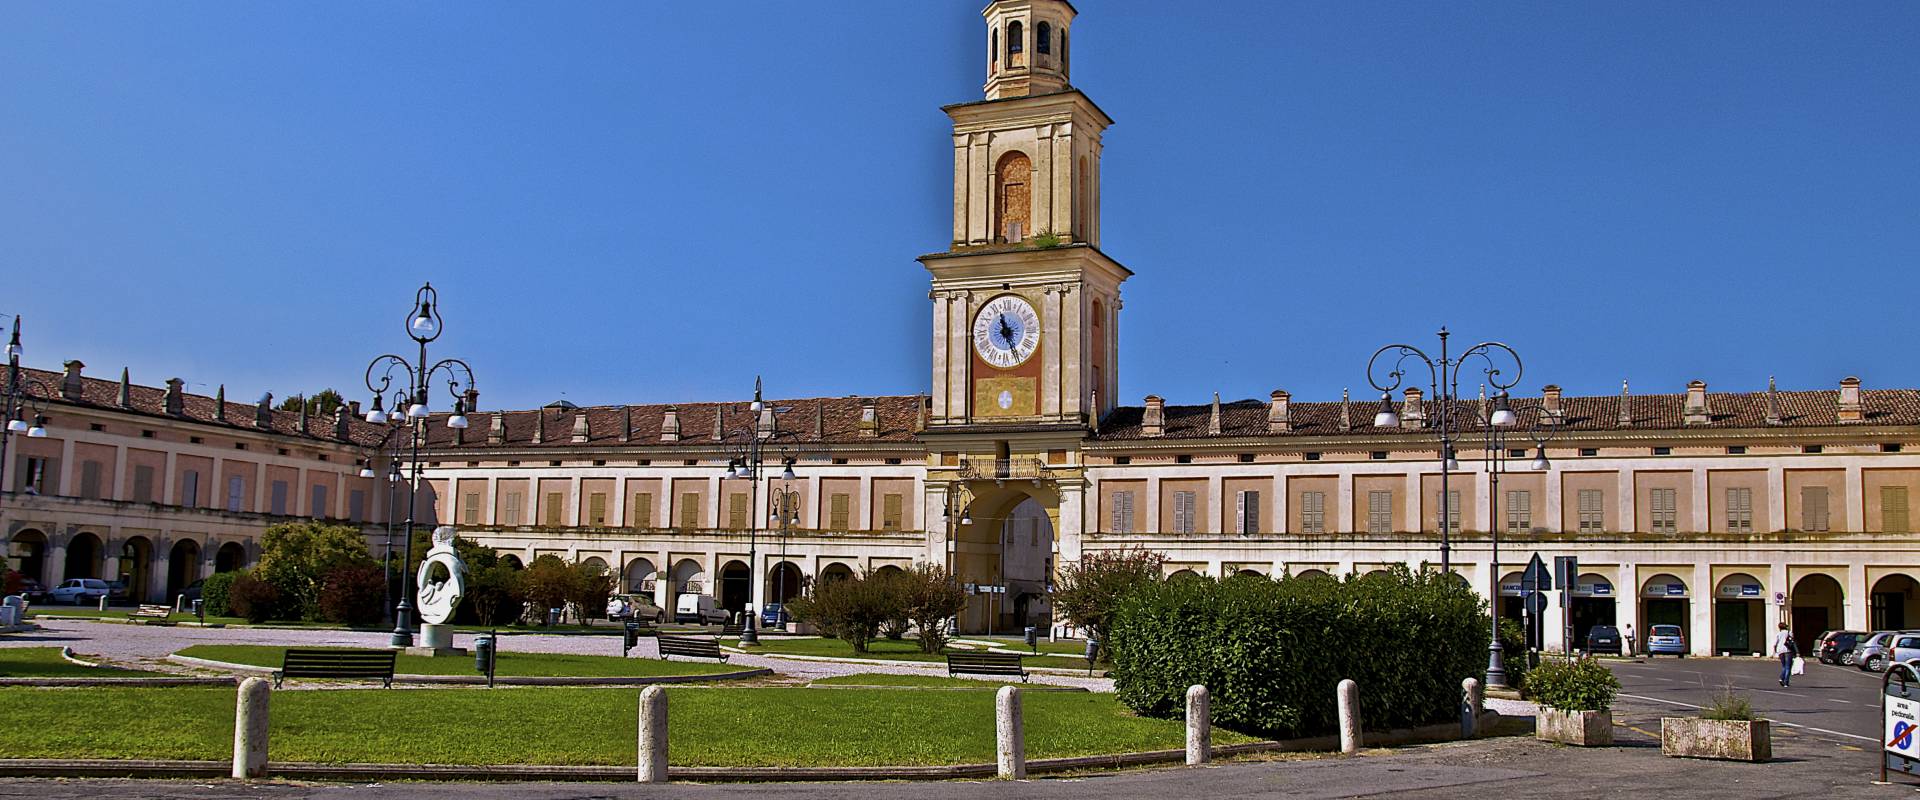 Piazza Bentivoglio - La piazza centrale di Gualtieri risalente al 1600 foto di Caba2011